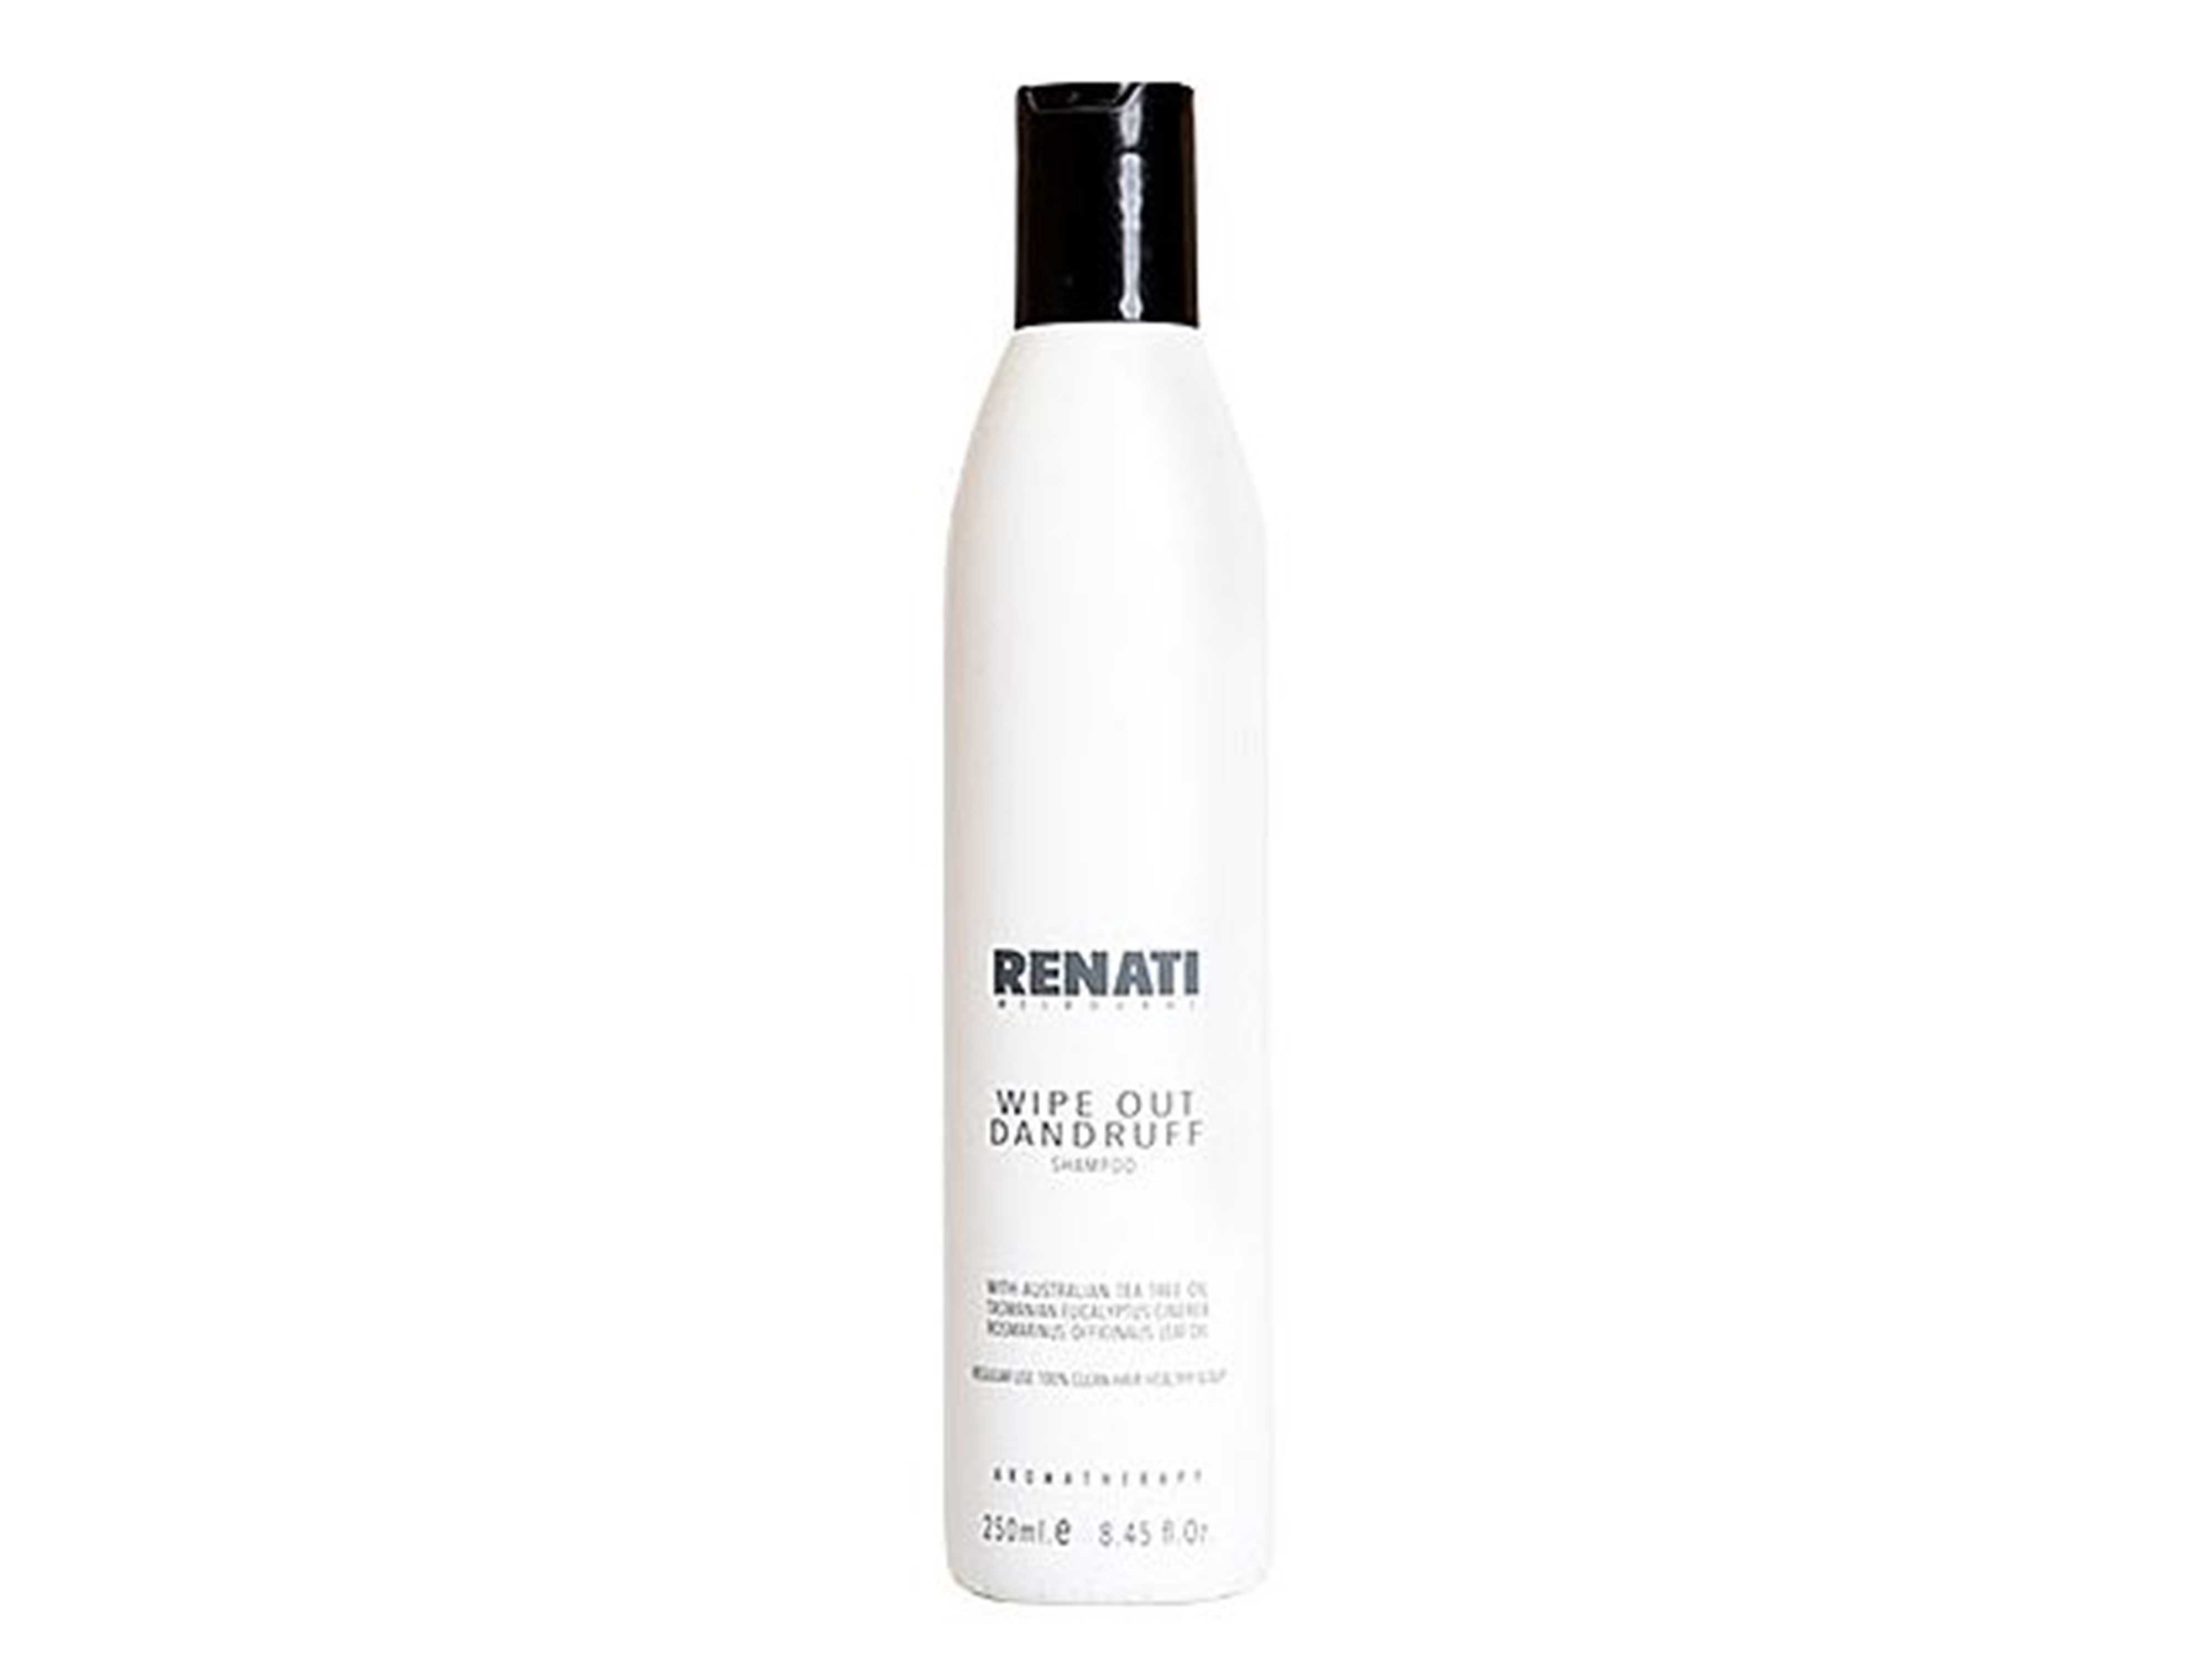 Renati Wipe Out Dandruff Shampoo, 250 ml